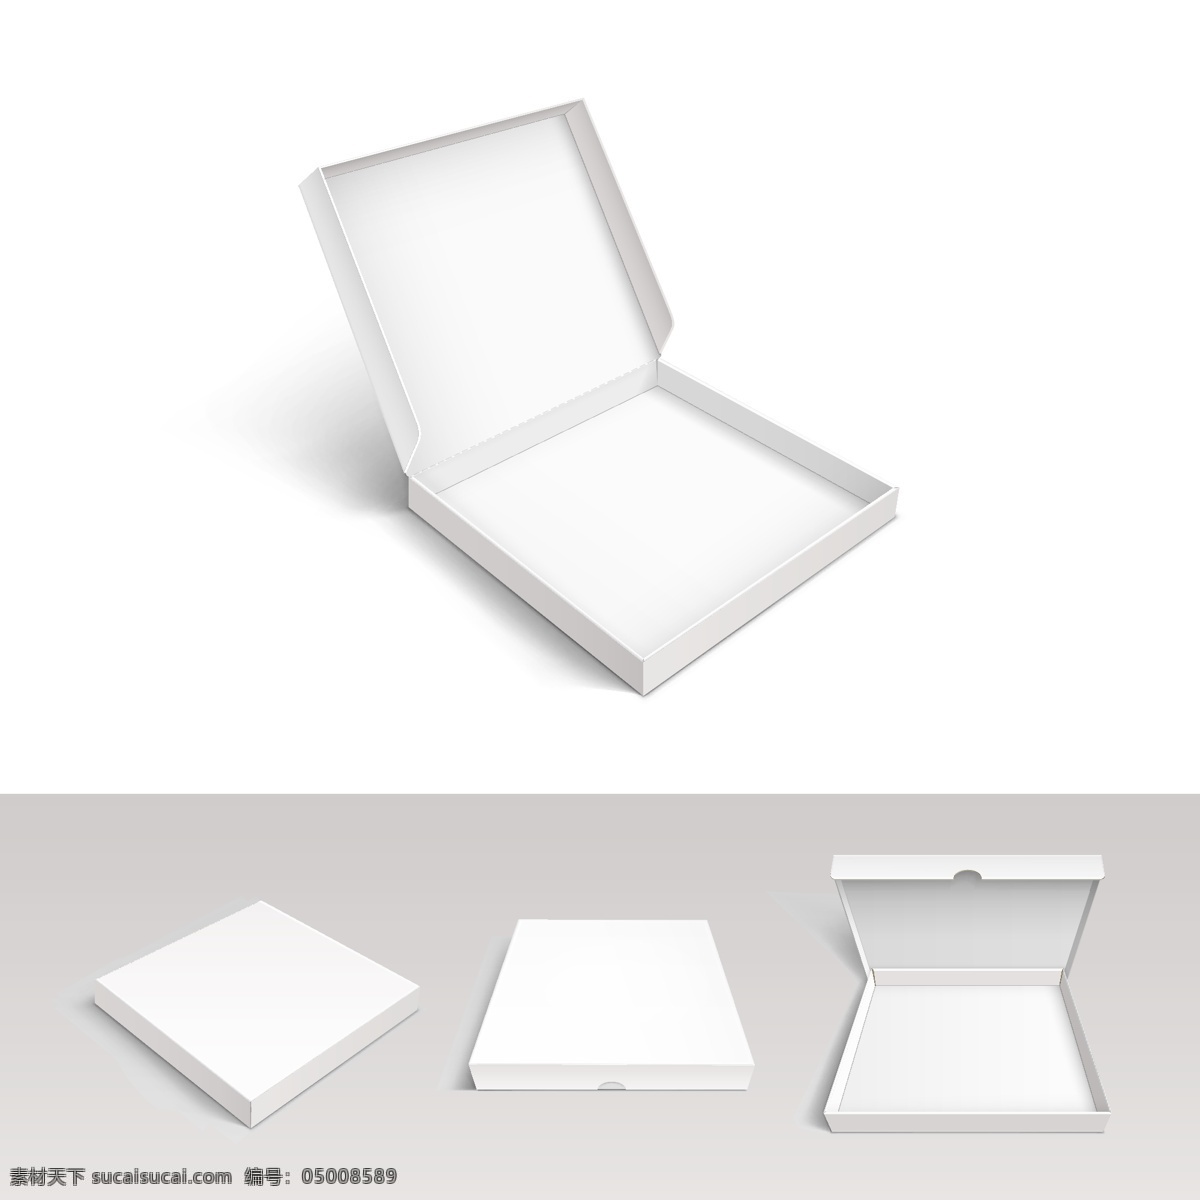 白色 翻盖 盒子 卡通 矢量 矢量素材 设计素材 背景素材